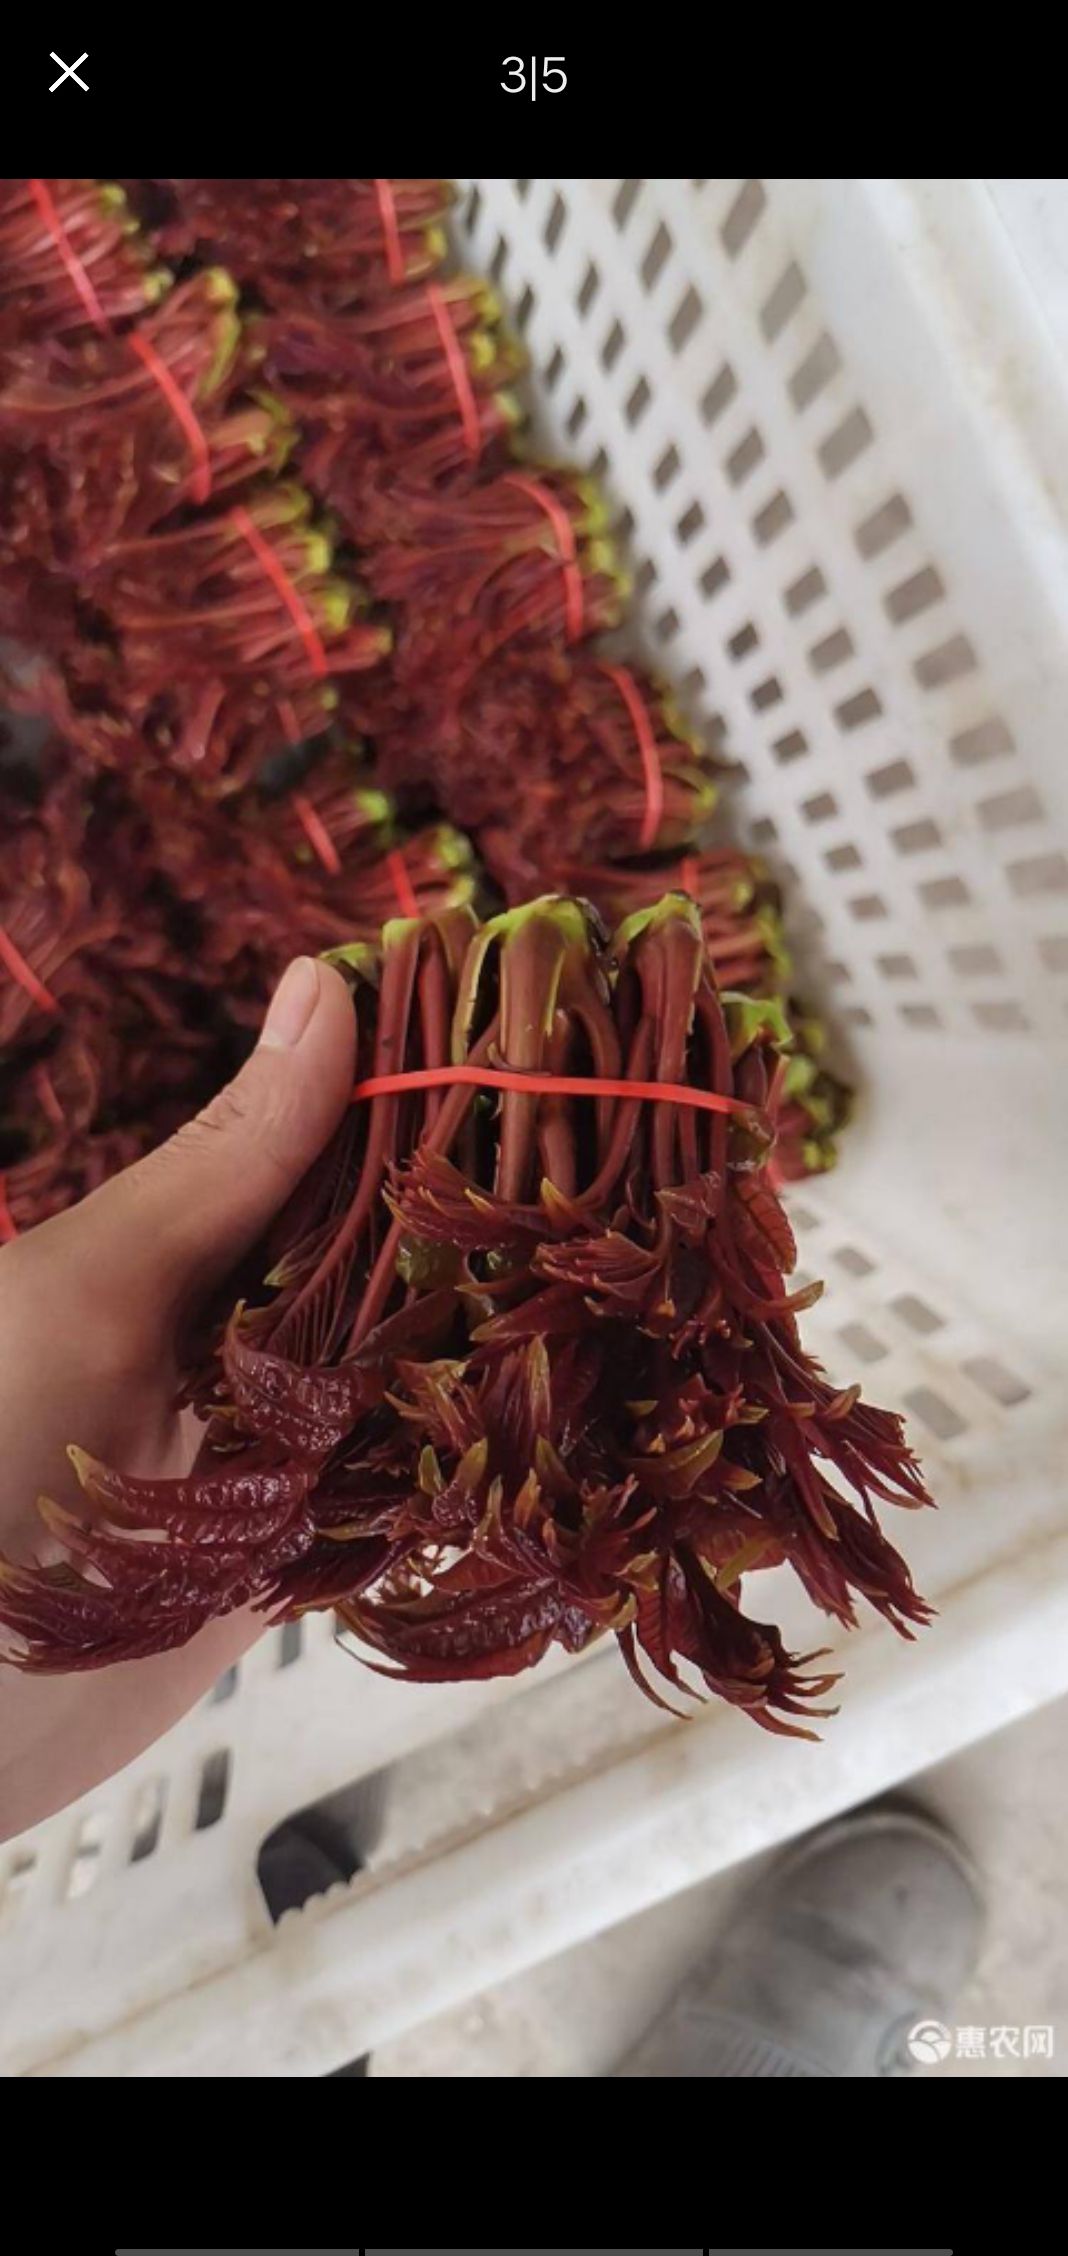 中科院四季红油香椿图片